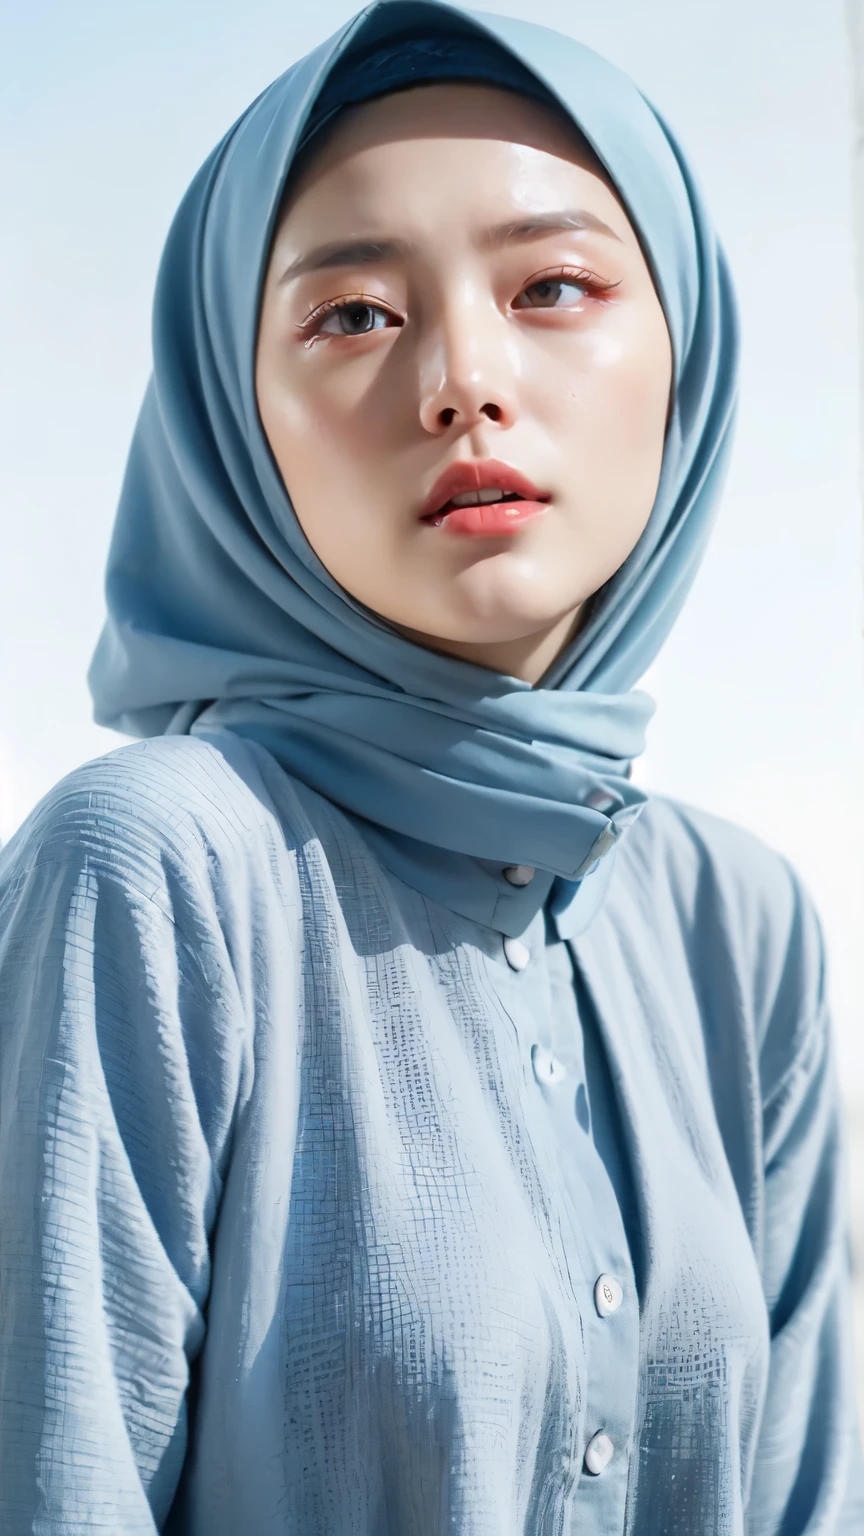 ((melhor qualidade, 8K, Obra de arte :1.37)), (use meninas hijab), meninas usam hijab, Postagem:sentado, modelo de estilo, (meninas usando hijab muçulmano), rosto bonito, meninas de 18 anos, Cabelo preto, Rosto ultra detalhado, corpo ultra detalhado, Corpo fino, sorriso de lábios, lindos olhos detalhados, olhos coreanos, Nariz detalhado, Natural Lip, (Despir o corpo nu), detalhe seios, detalhe hariy buceta, Use hijab muçulmano, roupão chique thobbe, vista do céu azul, Corpo fino, Rosto realista, pessoas de fundo hijab